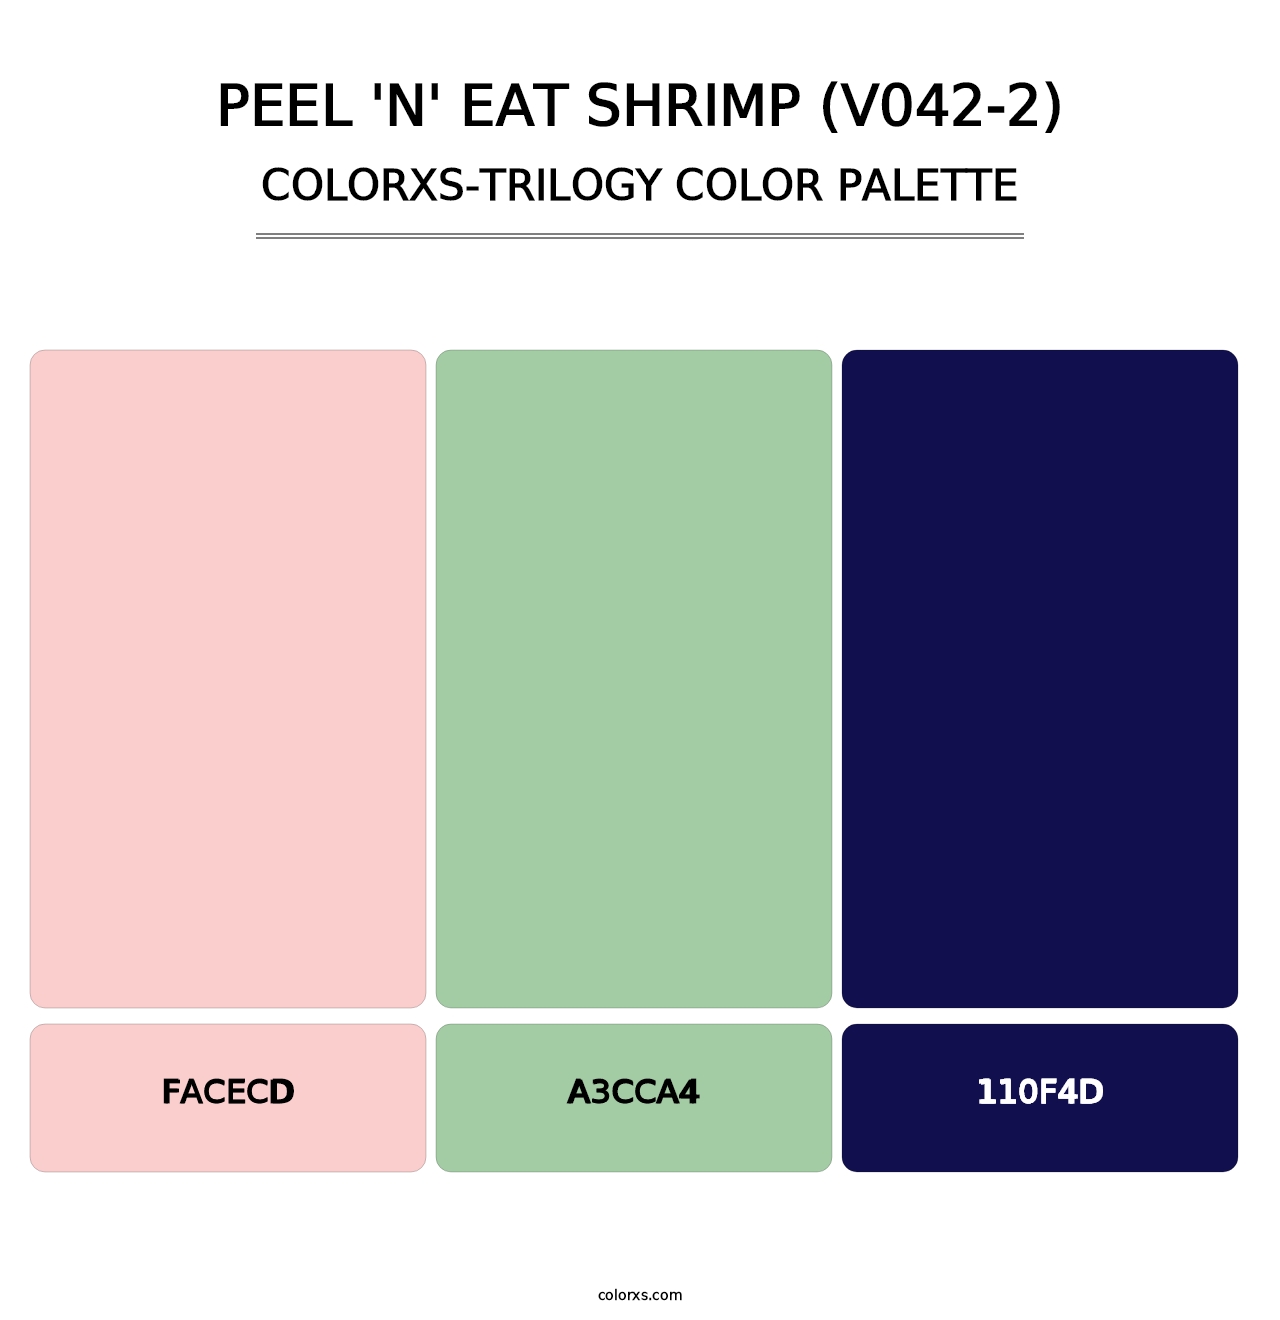 Peel 'n' Eat Shrimp (V042-2) - Colorxs Trilogy Palette